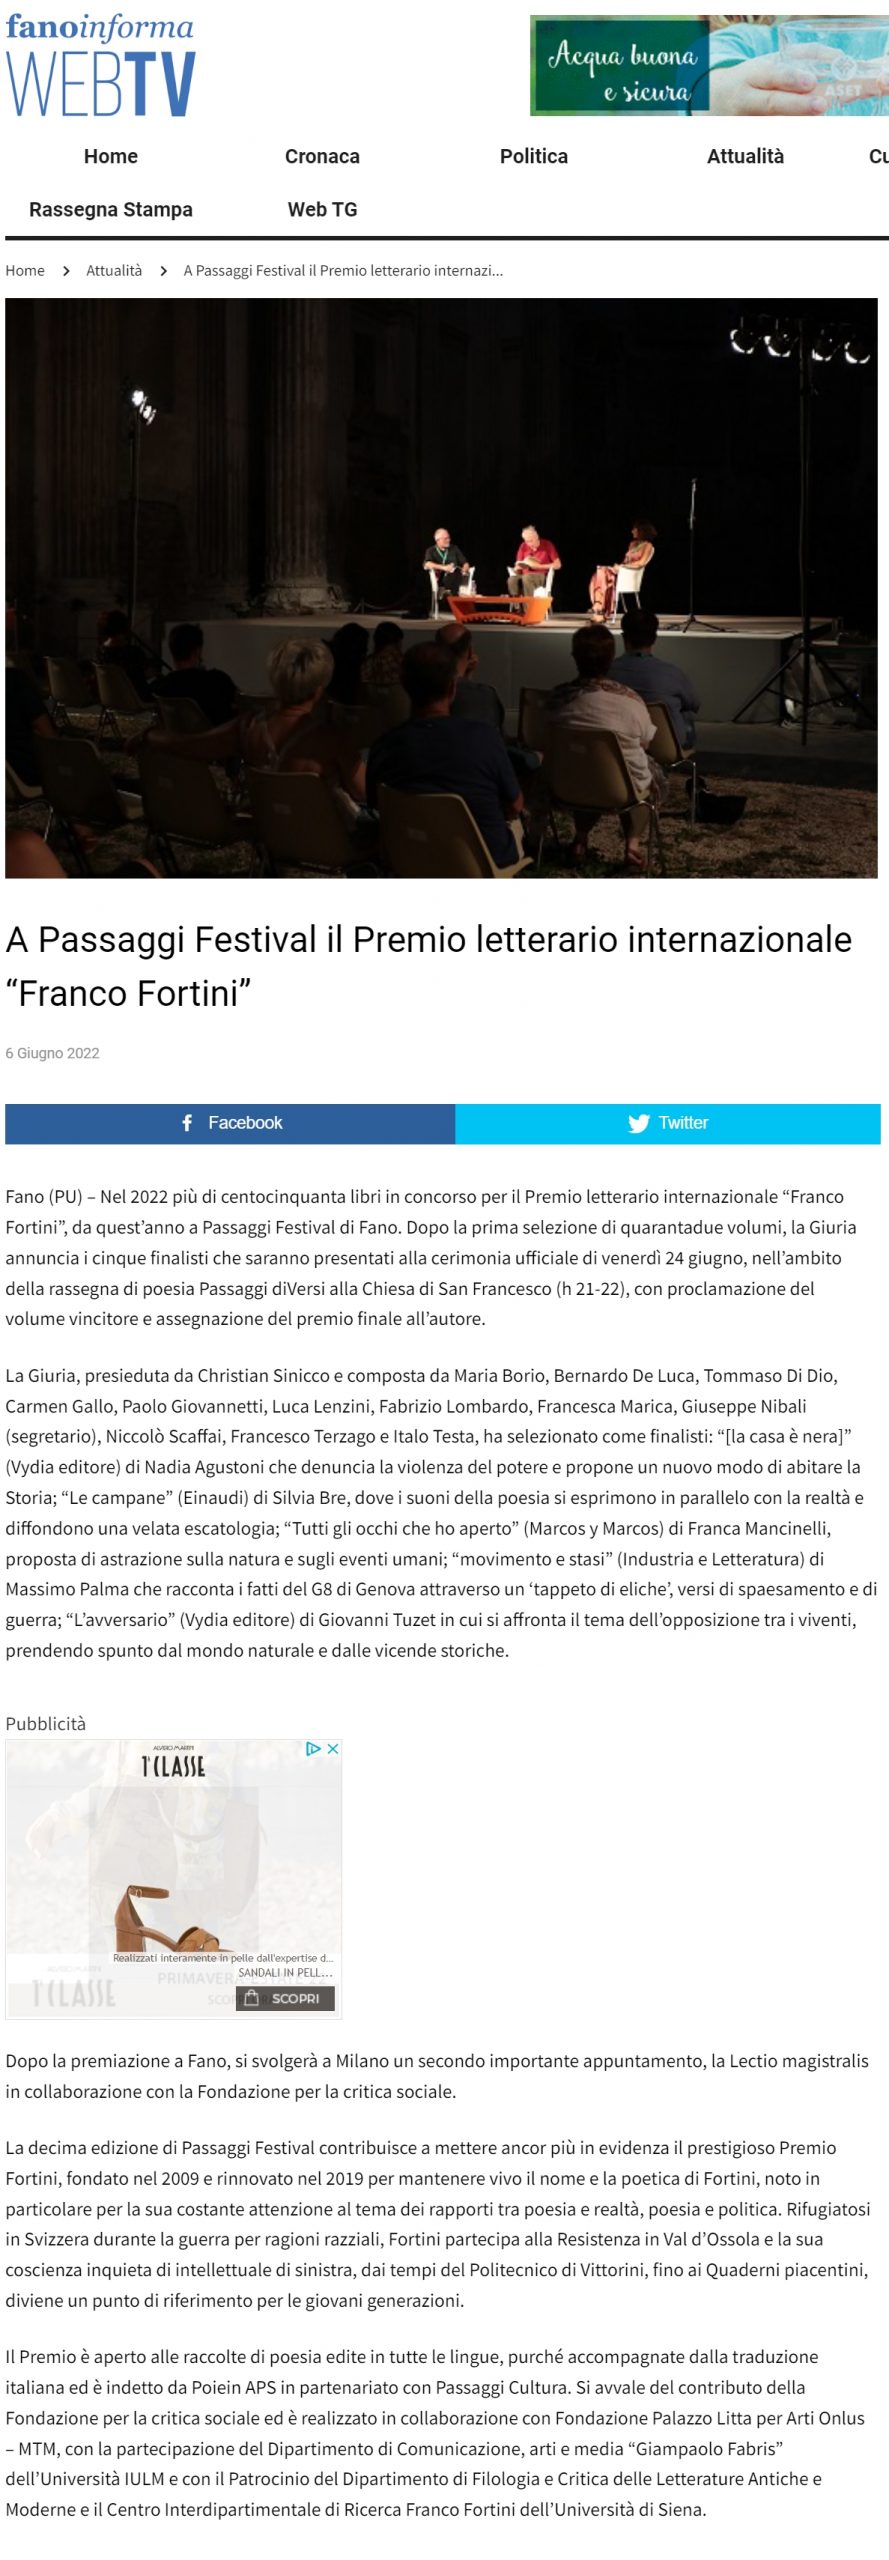 2022-06-06-fano-informa-a-passaggi-festival-il-premio-letterario-internazionale-franco-fortini